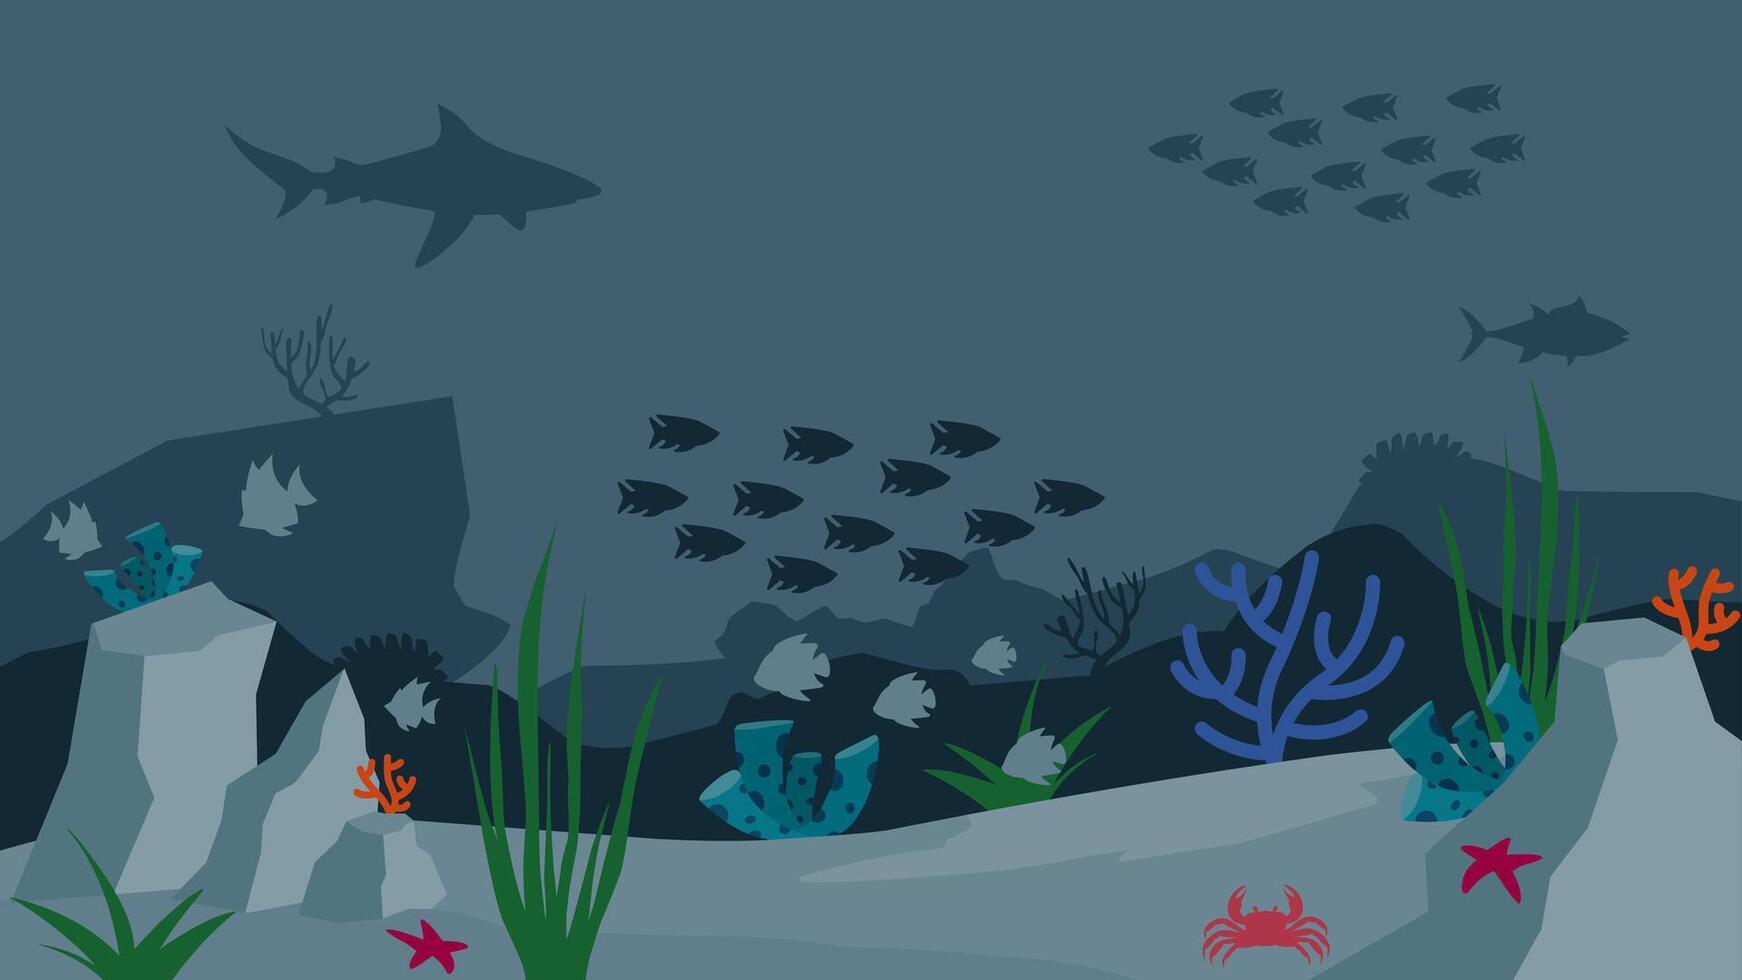 platt landskap illustration av under vattnet med fiskar och korall rev vektor